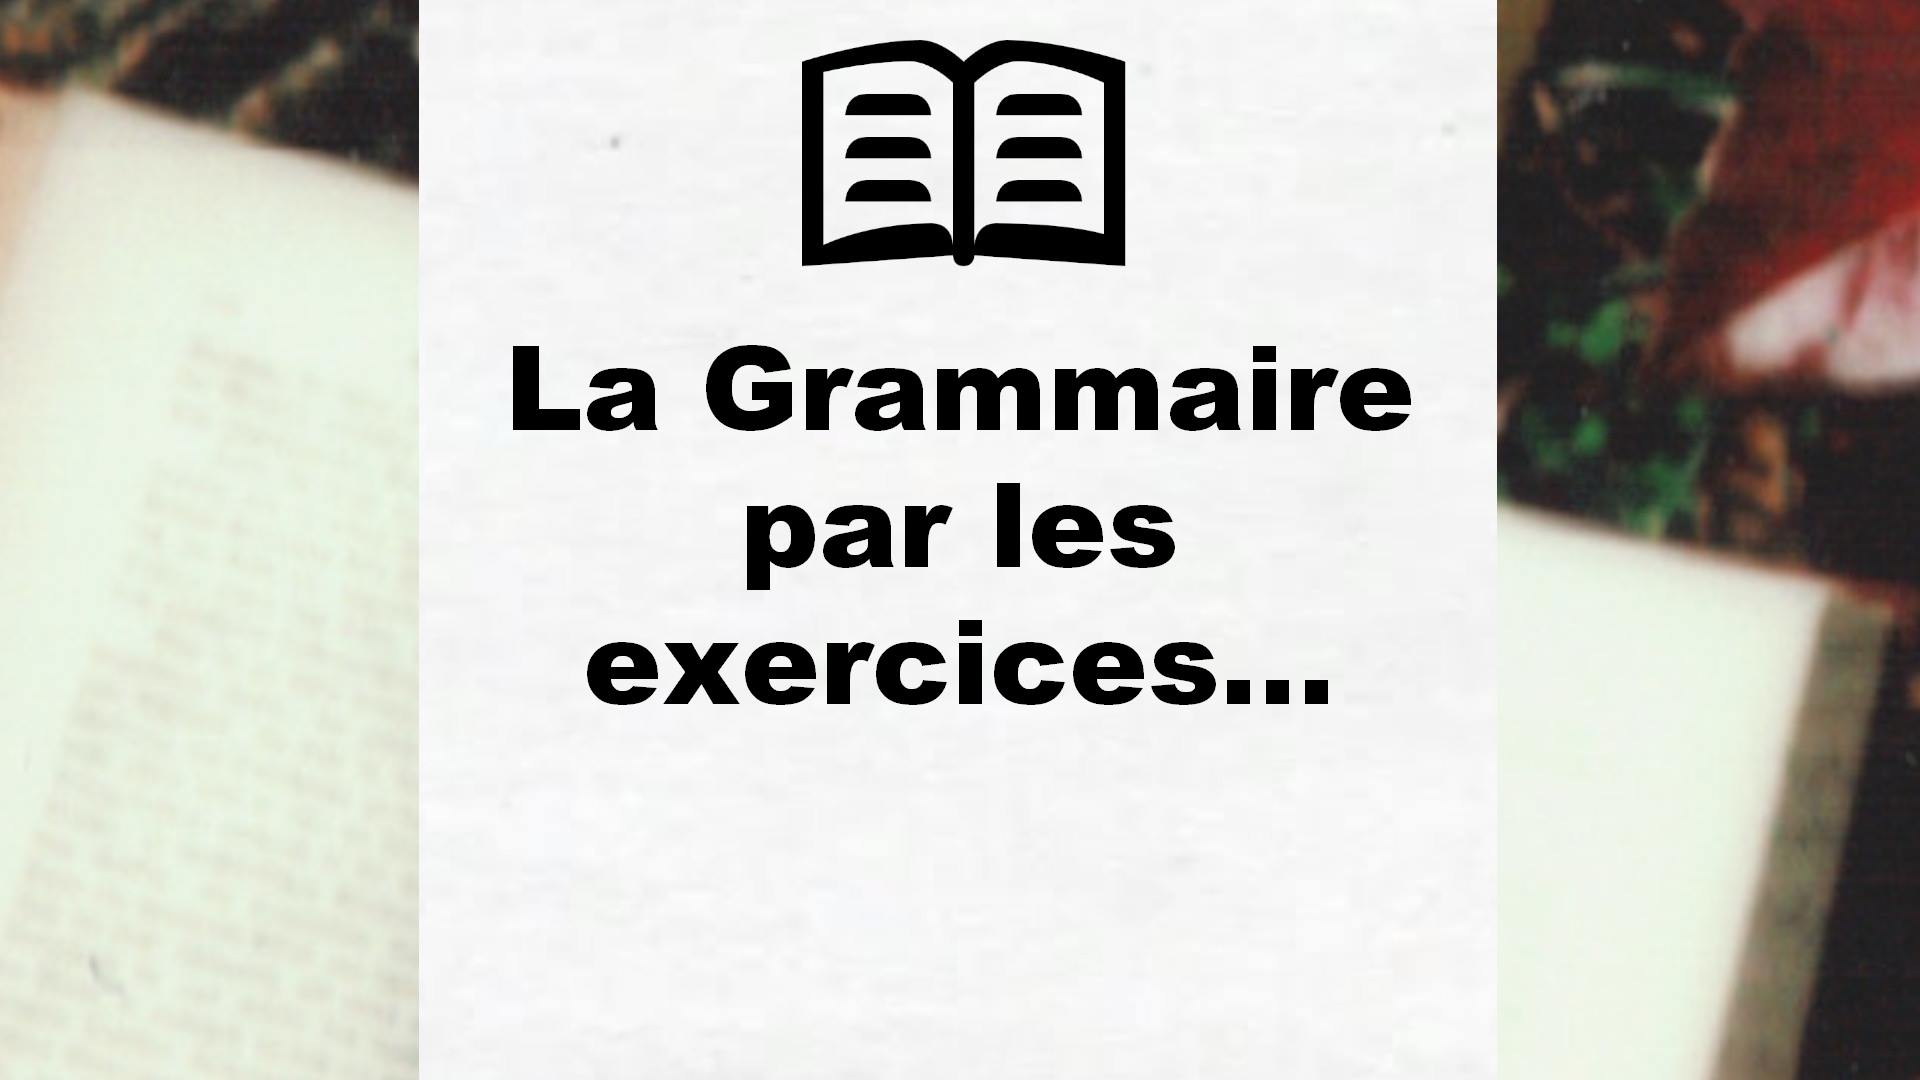 La Grammaire par les exercices… – Critique